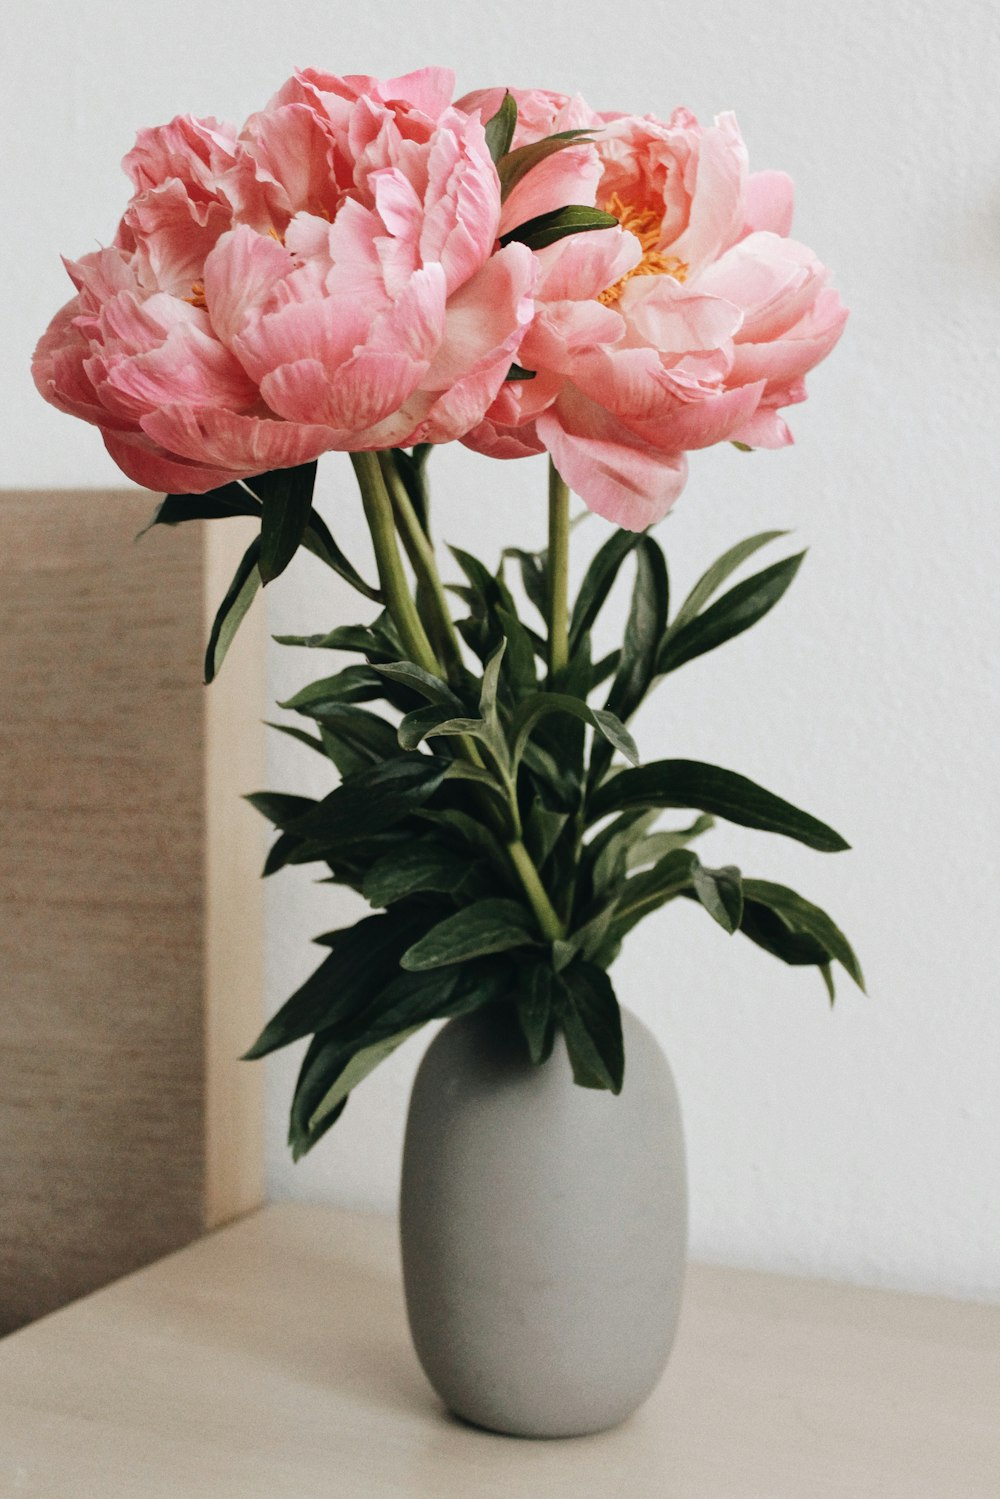 flor cor-de-rosa no vaso de cerâmica branco